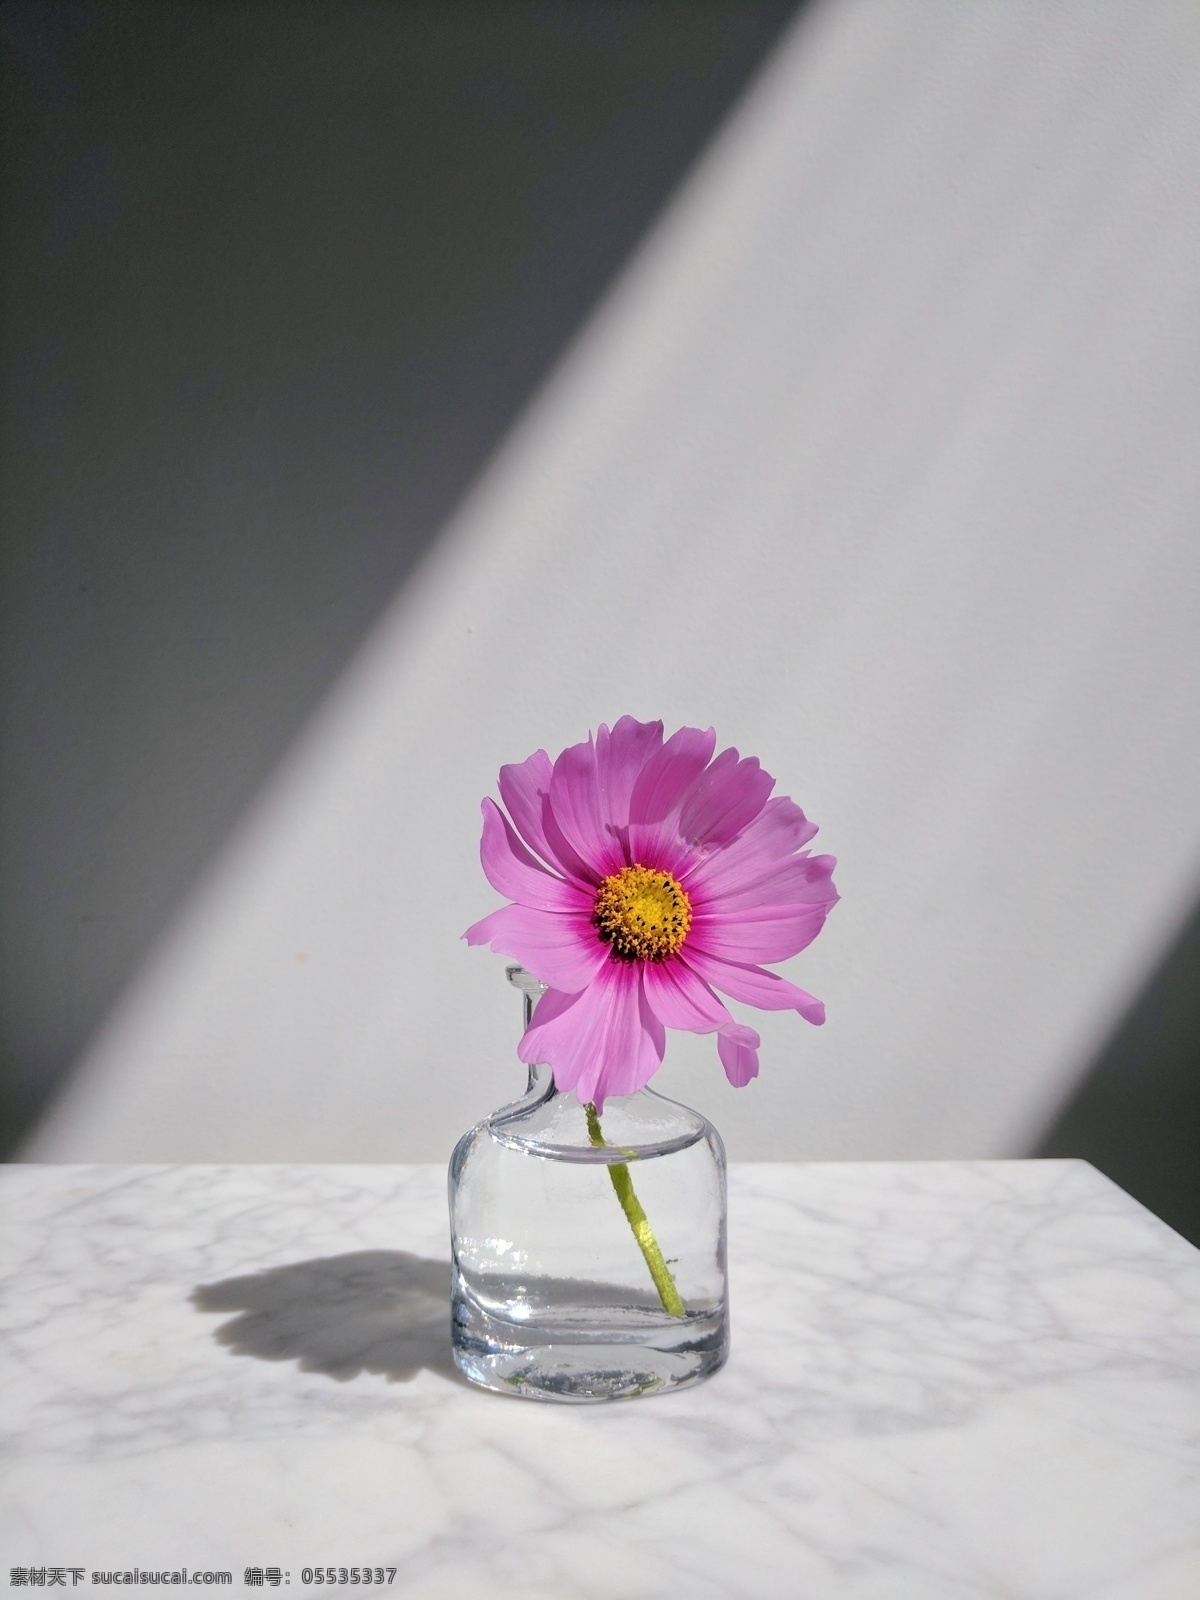 束 光大 理石 玻璃瓶 朵 花 一束光 大理石面 一朵花 紫色菊花